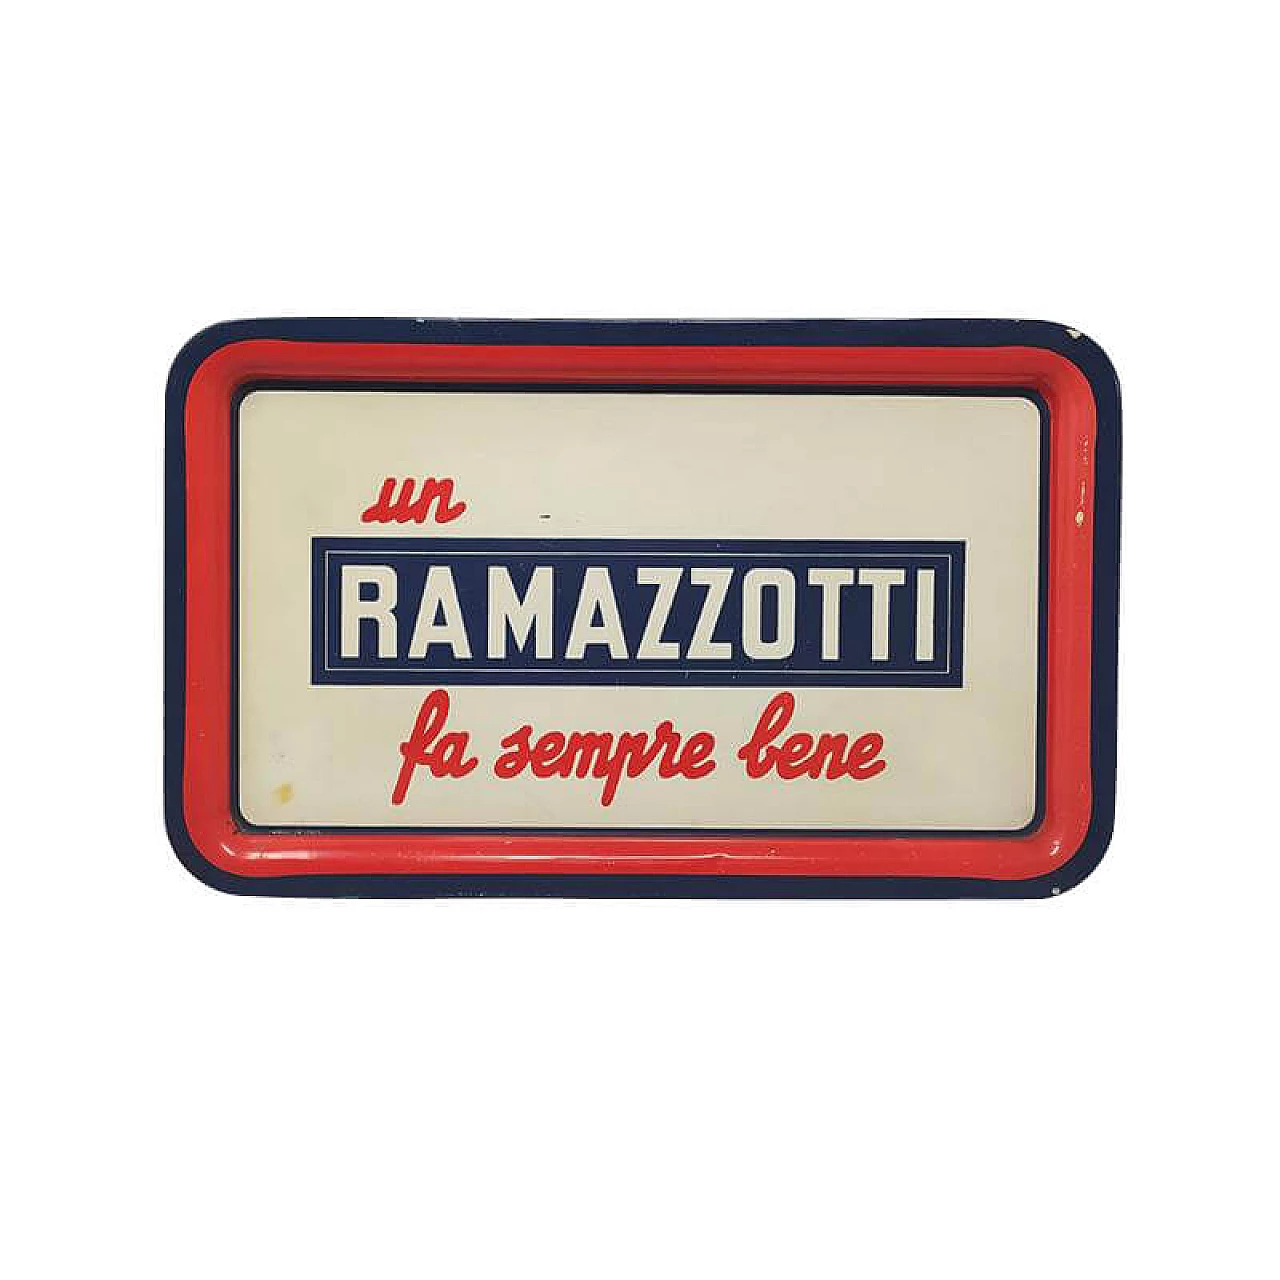 Ramazzotti rectangular bar tray, 1960s 1182915